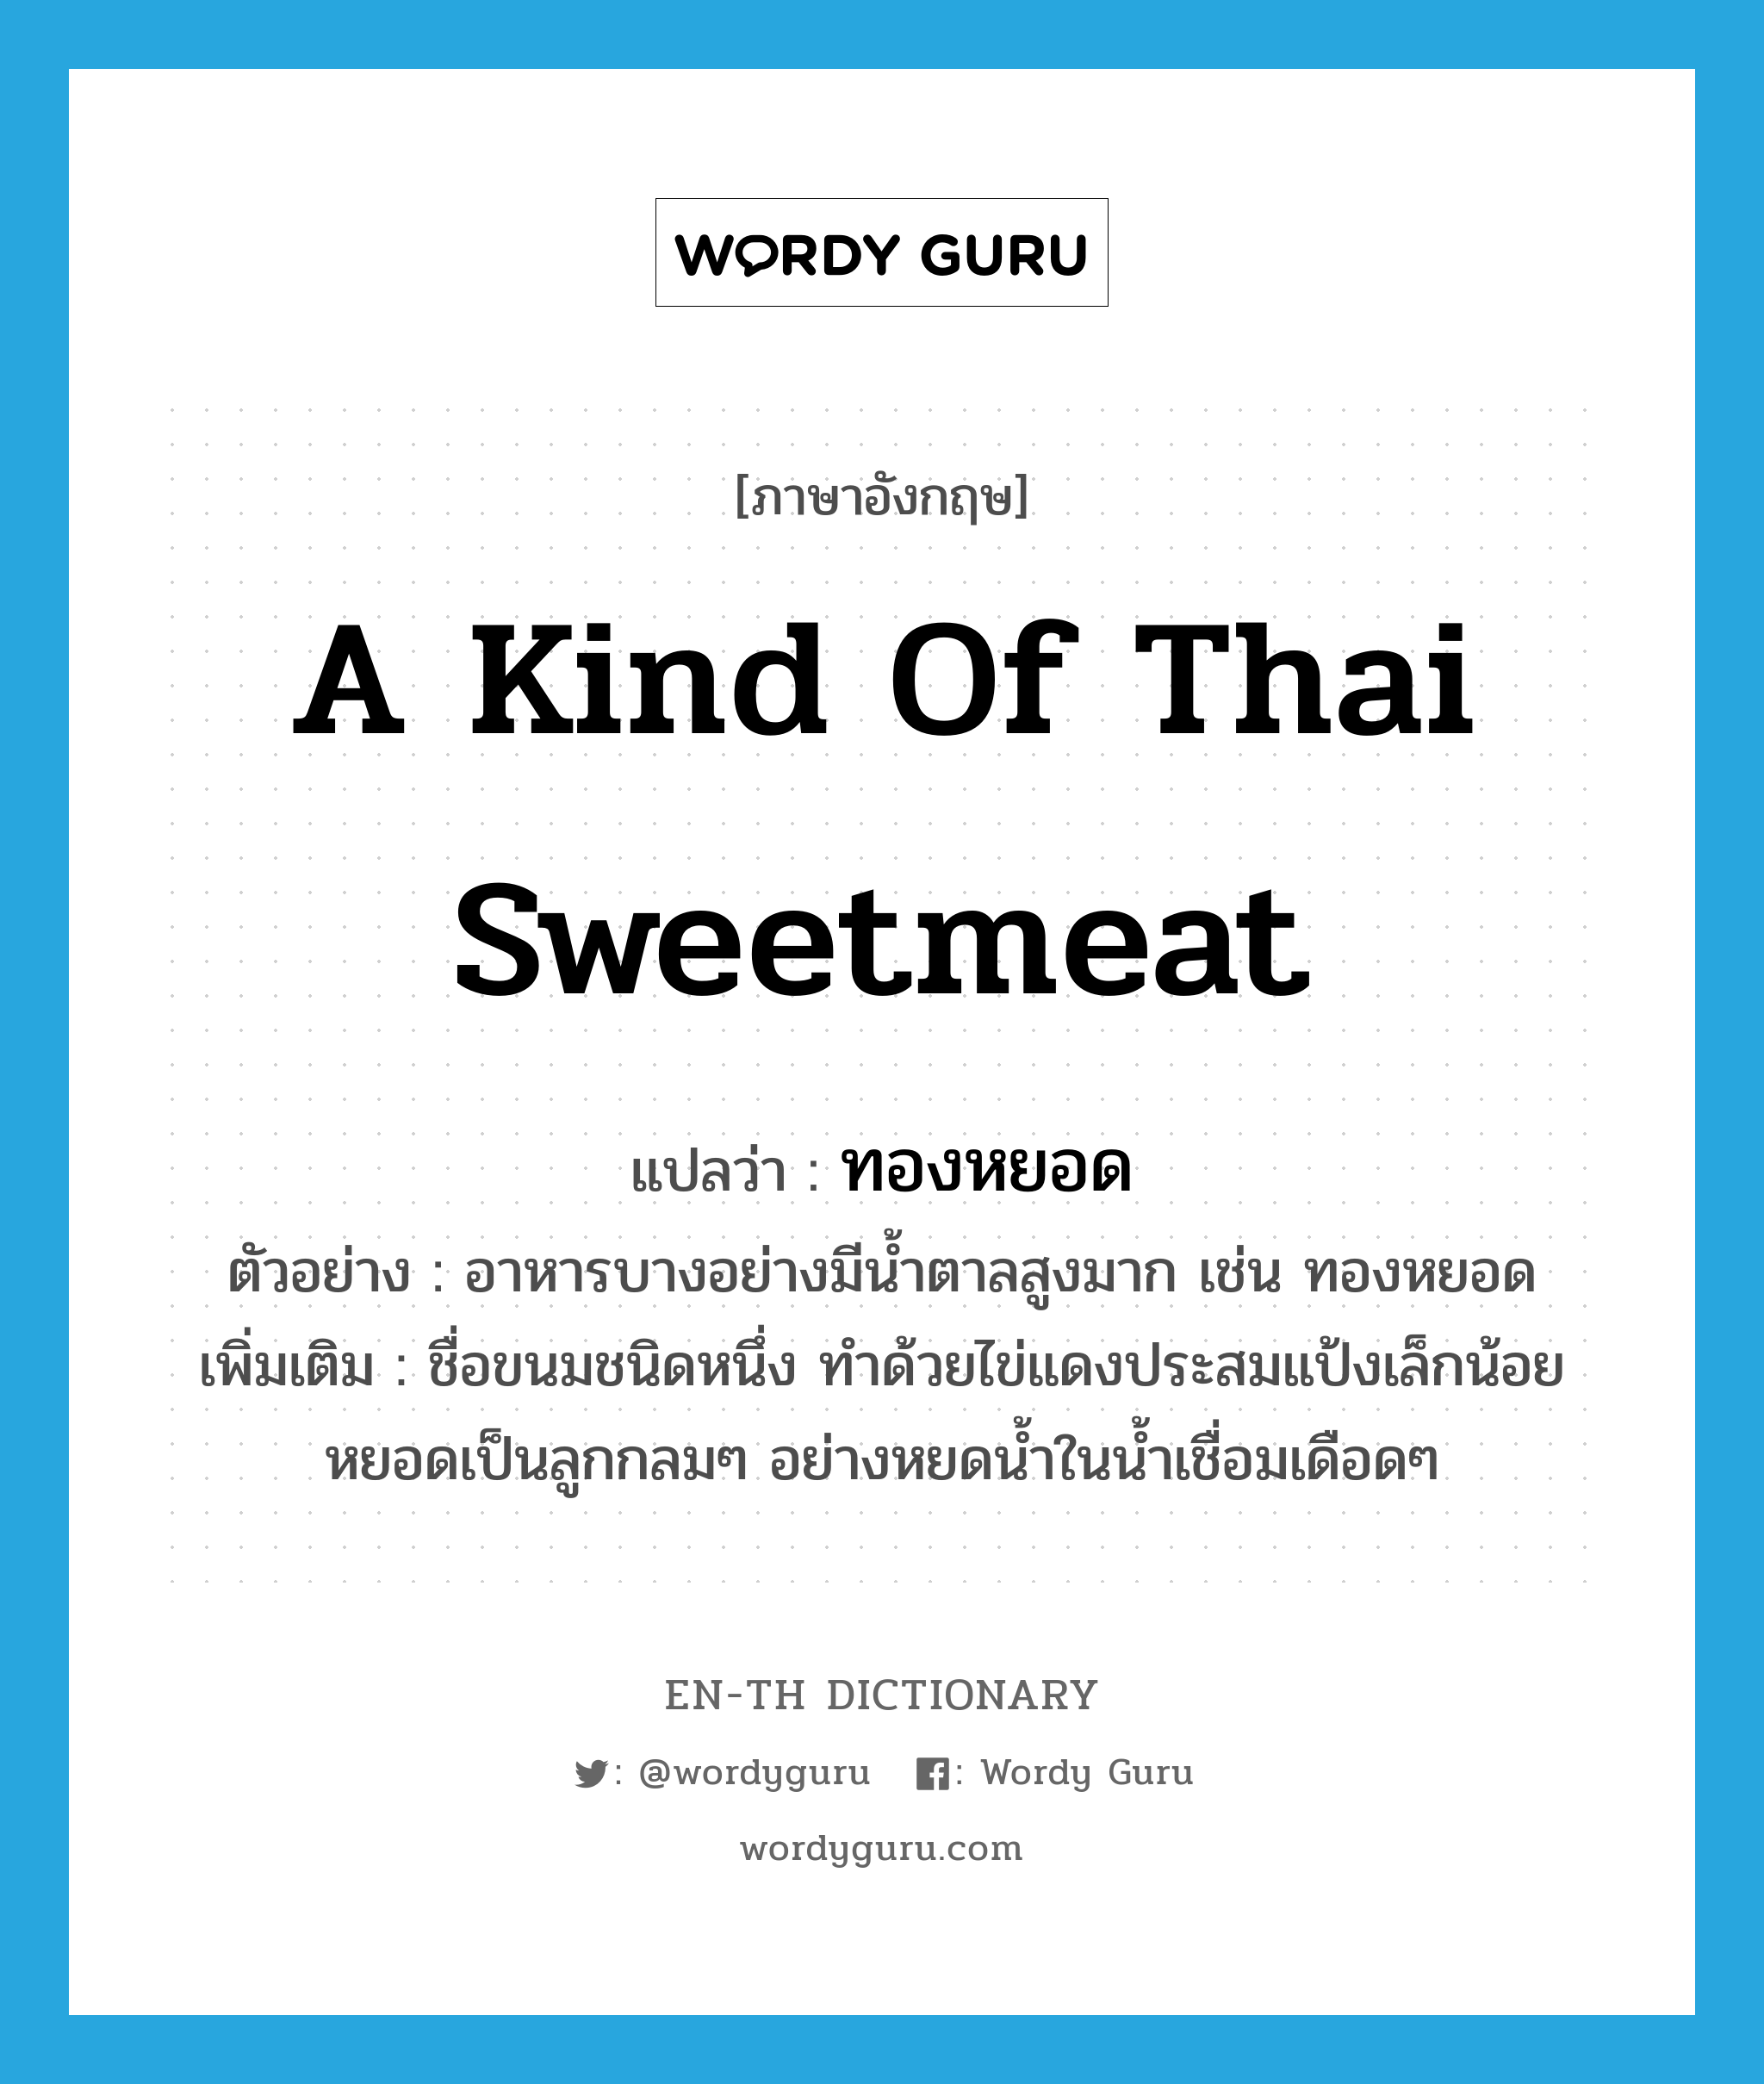 a kind of Thai sweetmeat แปลว่า?, คำศัพท์ภาษาอังกฤษ a kind of Thai sweetmeat แปลว่า ทองหยอด ประเภท N ตัวอย่าง อาหารบางอย่างมีน้ำตาลสูงมาก เช่น ทองหยอด เพิ่มเติม ชื่อขนมชนิดหนึ่ง ทำด้วยไข่แดงประสมแป้งเล็กน้อย หยอดเป็นลูกกลมๆ อย่างหยดน้ำในน้ำเชื่อมเดือดๆ หมวด N